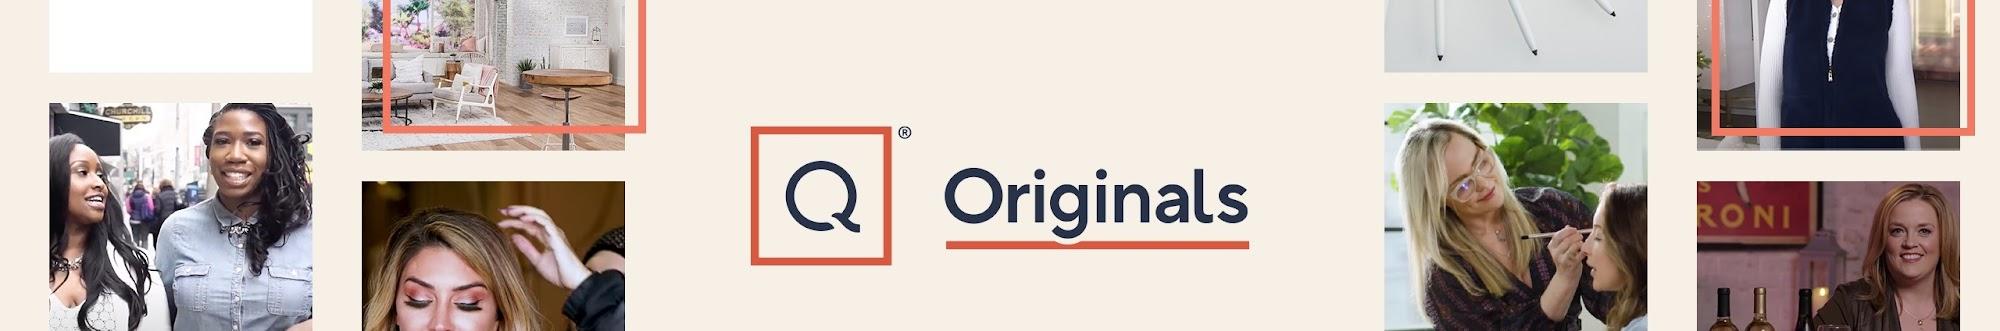 QVC Originals